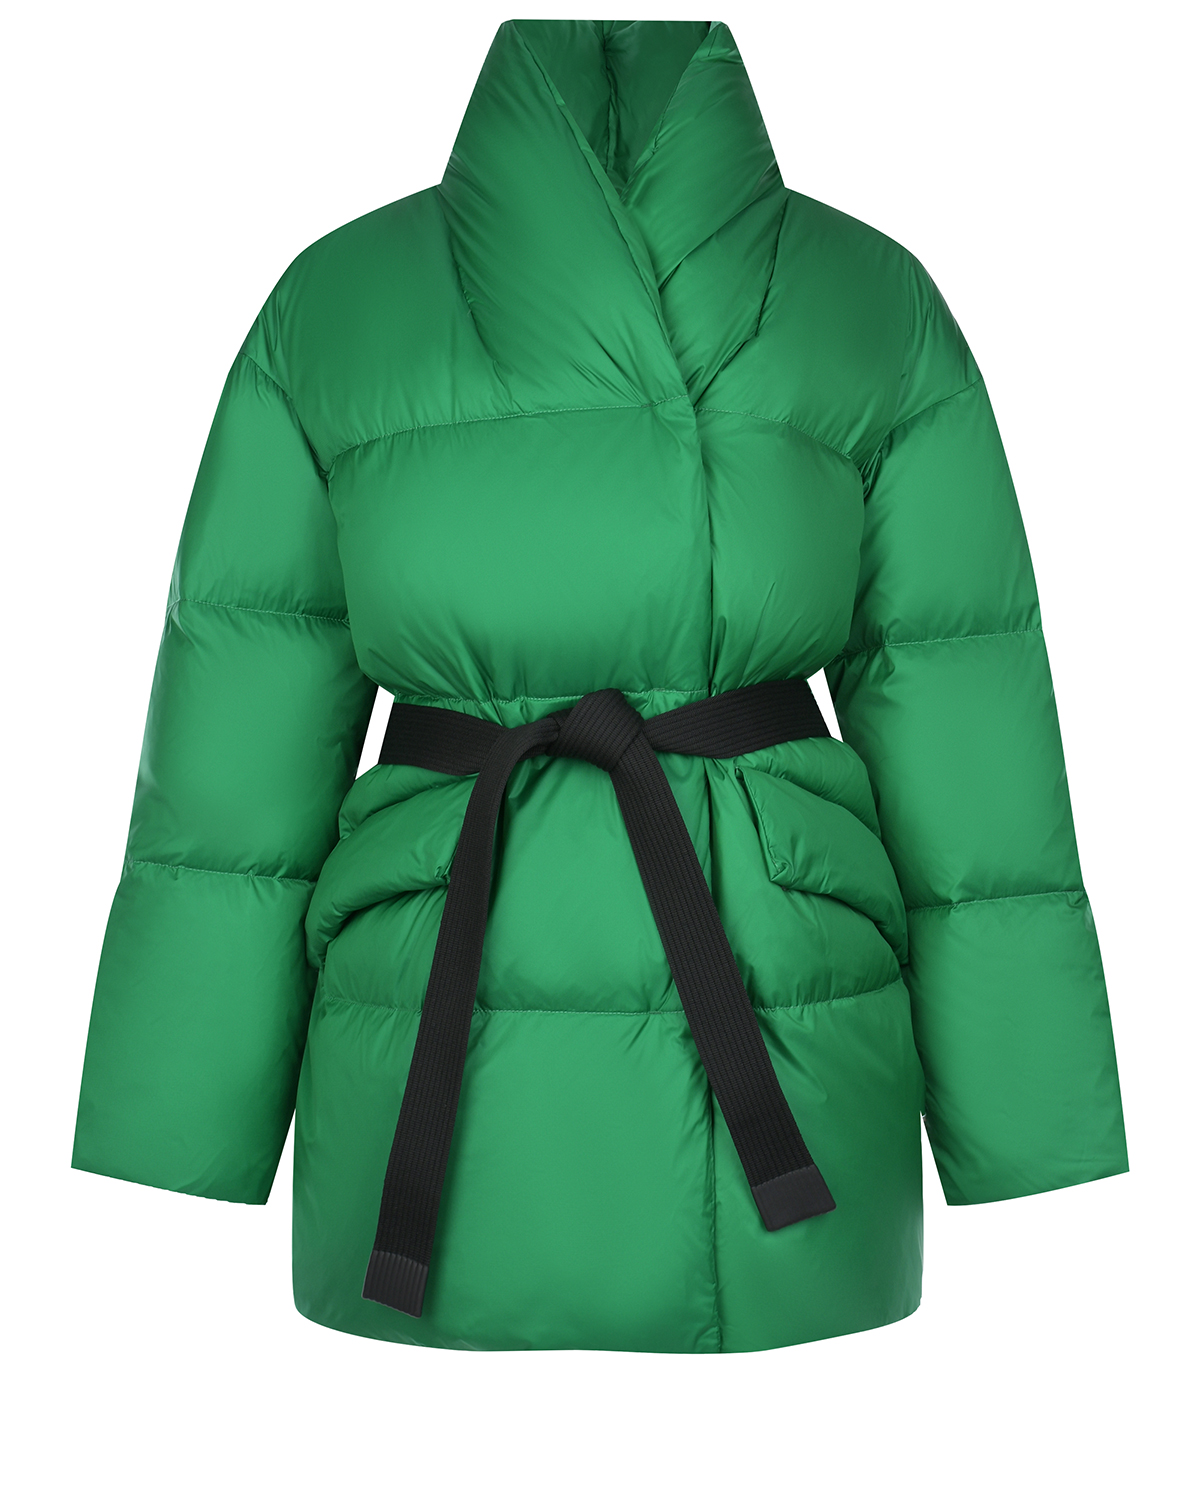 Зеленая куртка с черным поясом Naumi, размер 40, цвет зеленый - фото 1